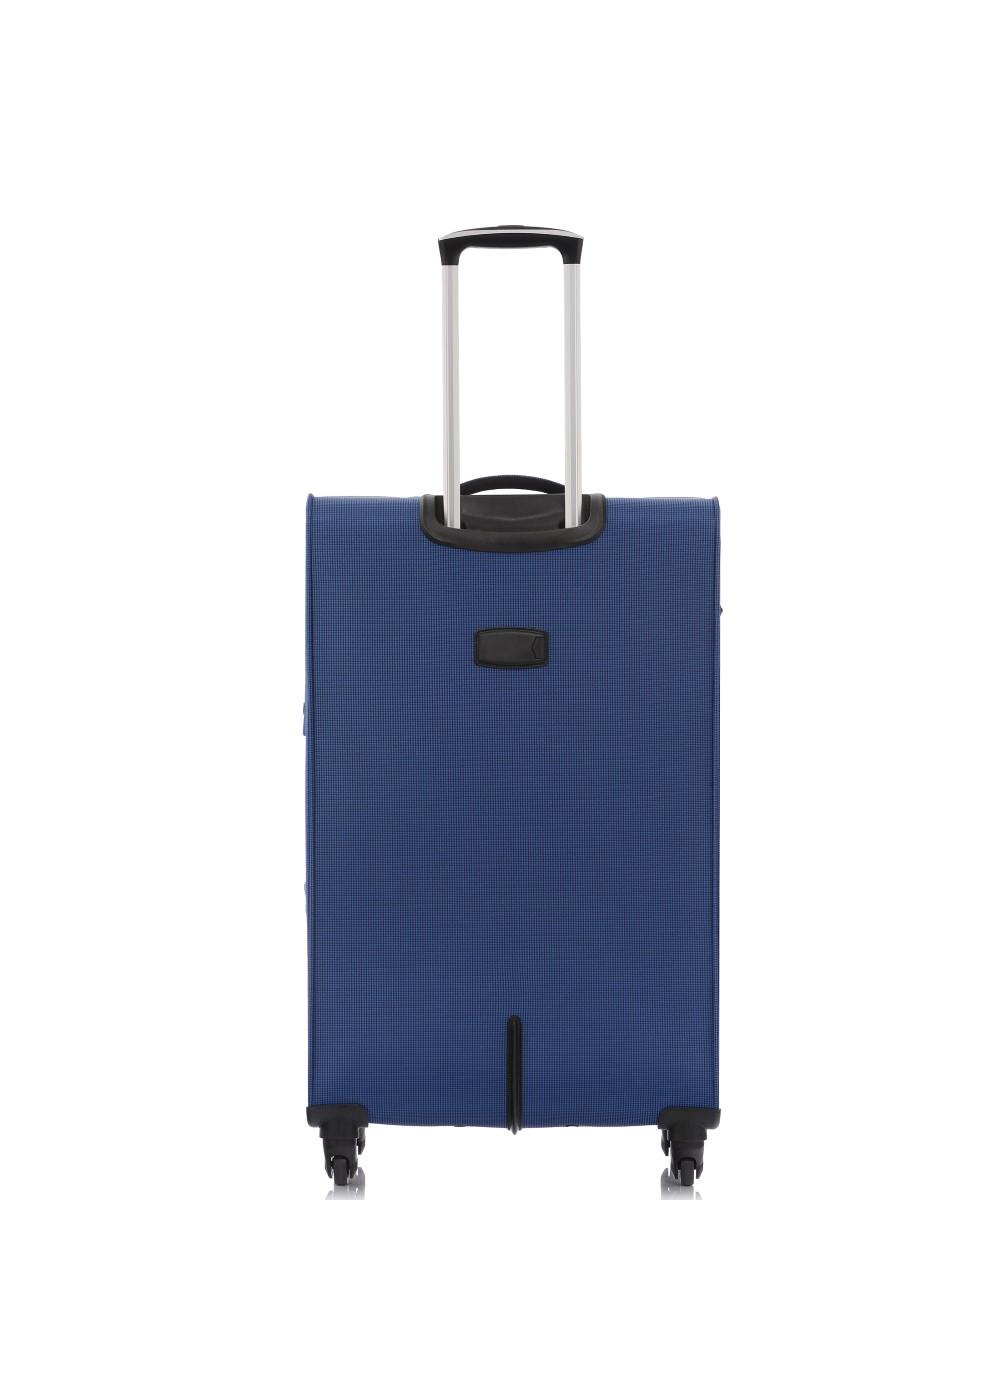 Duża walizka na kółkach WALNY-0025-69-28